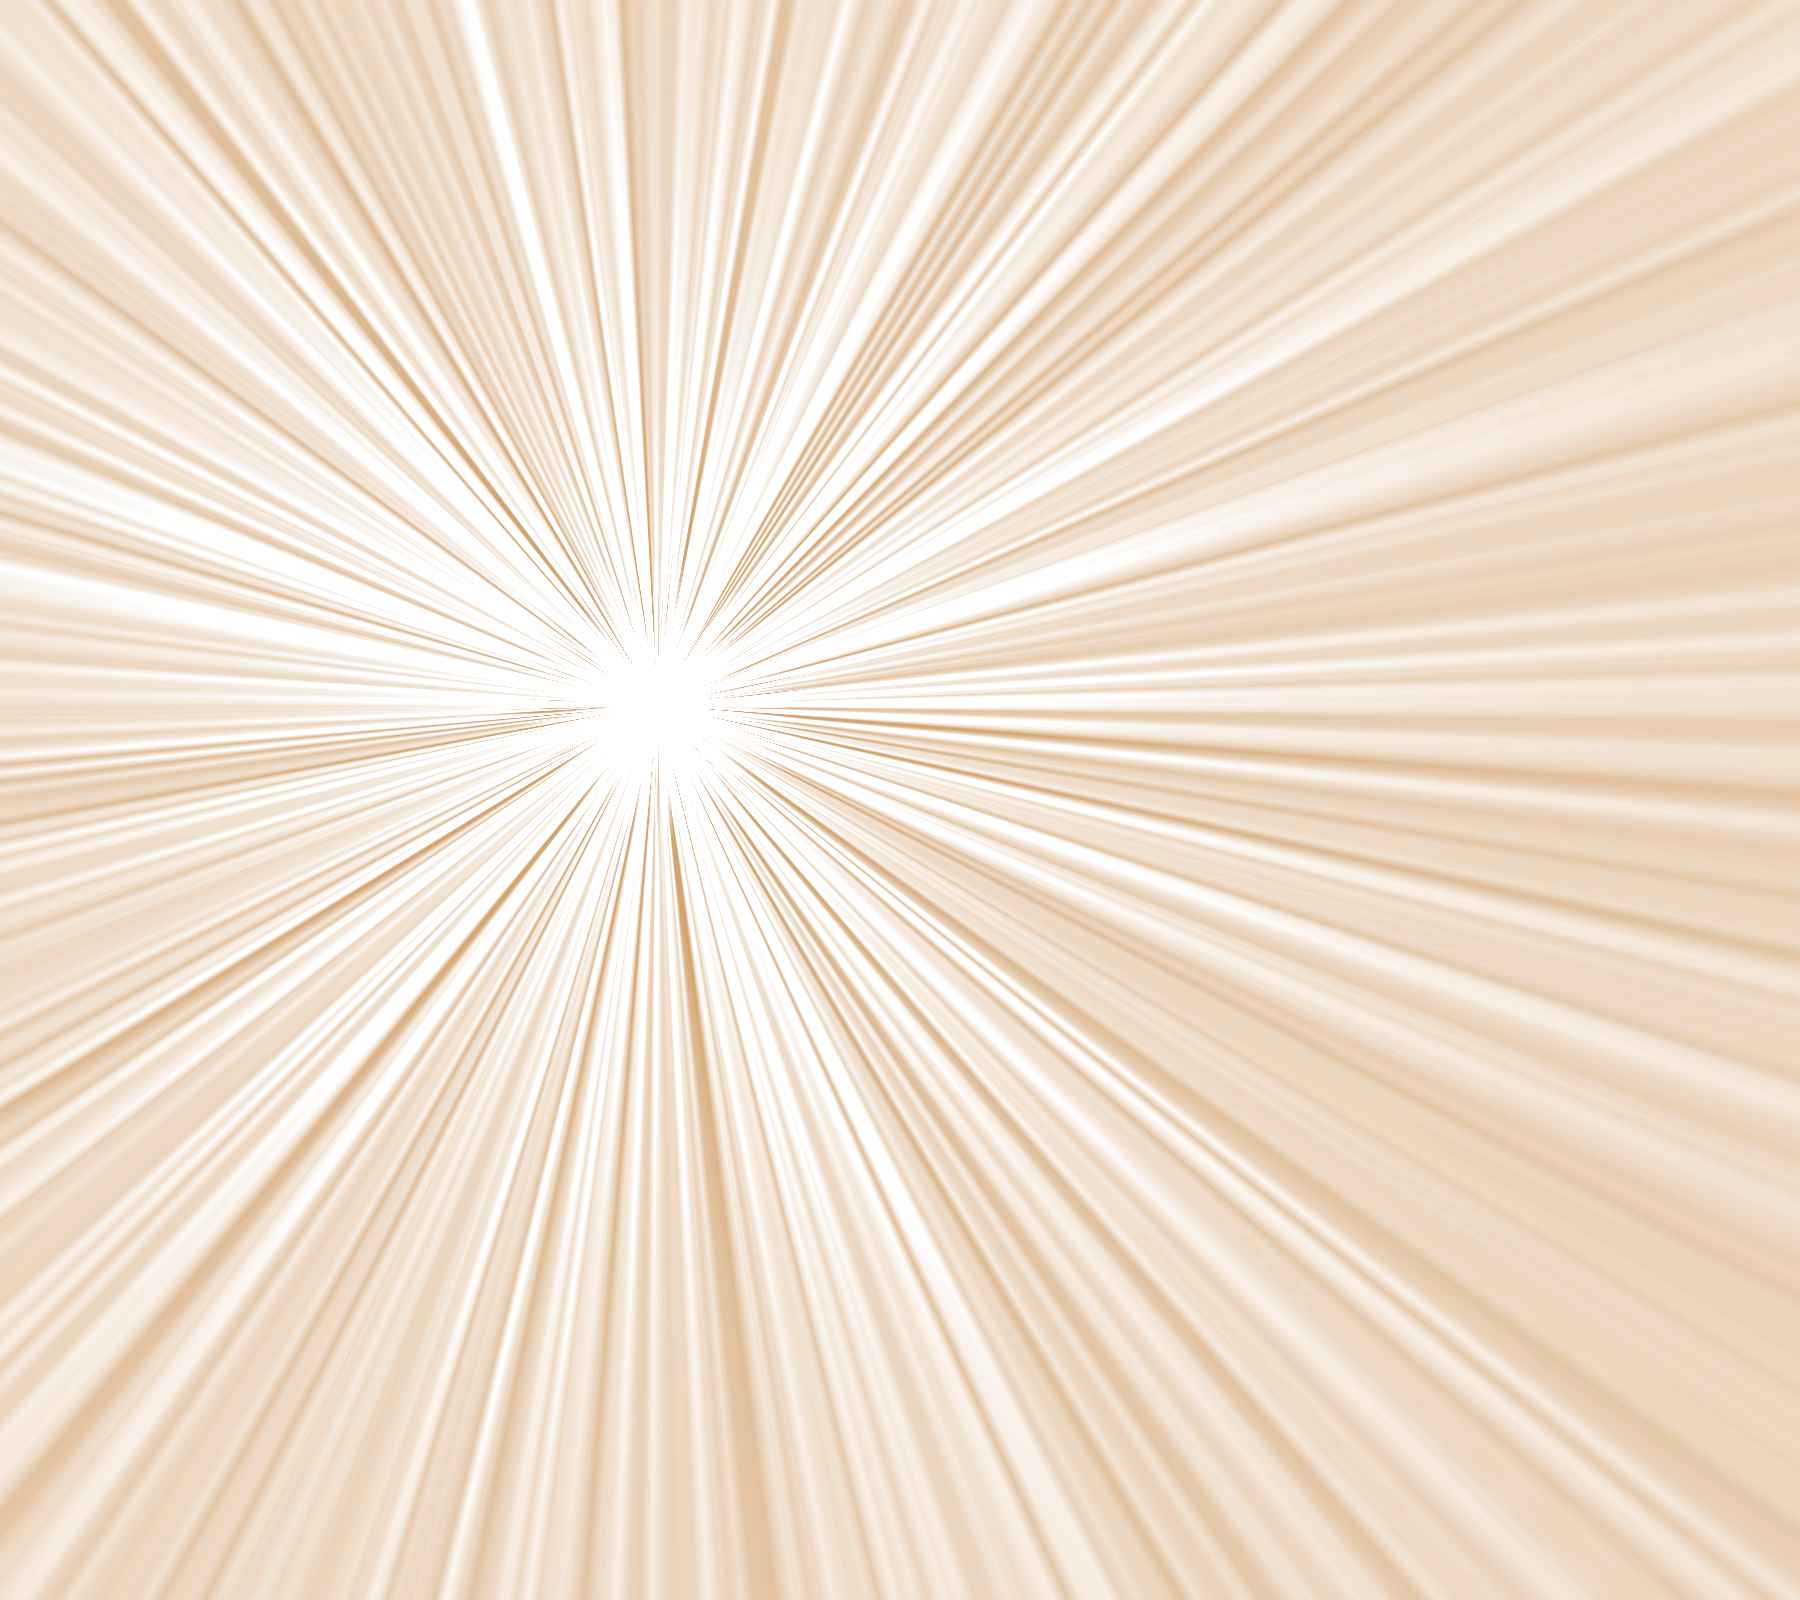 Tan Starburst Radiating Lines Background Image